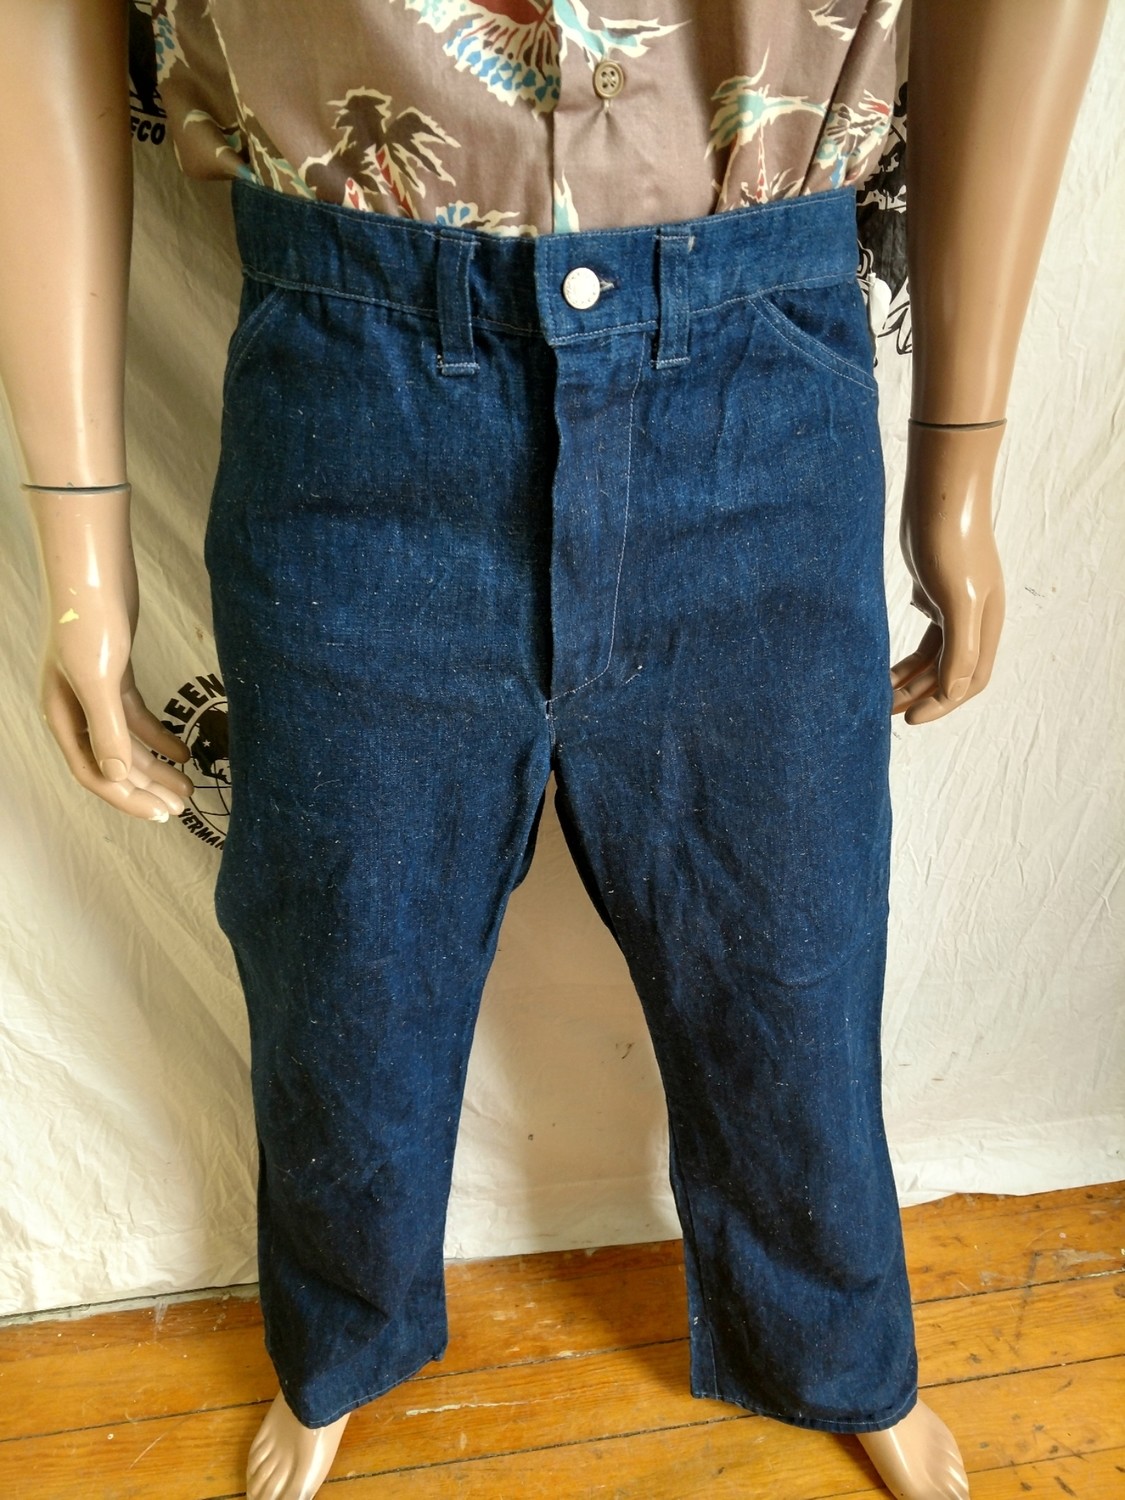 Hermans Hemp Indigo Jeans 34 X 31 Hemp/cotton Made in USA indigo